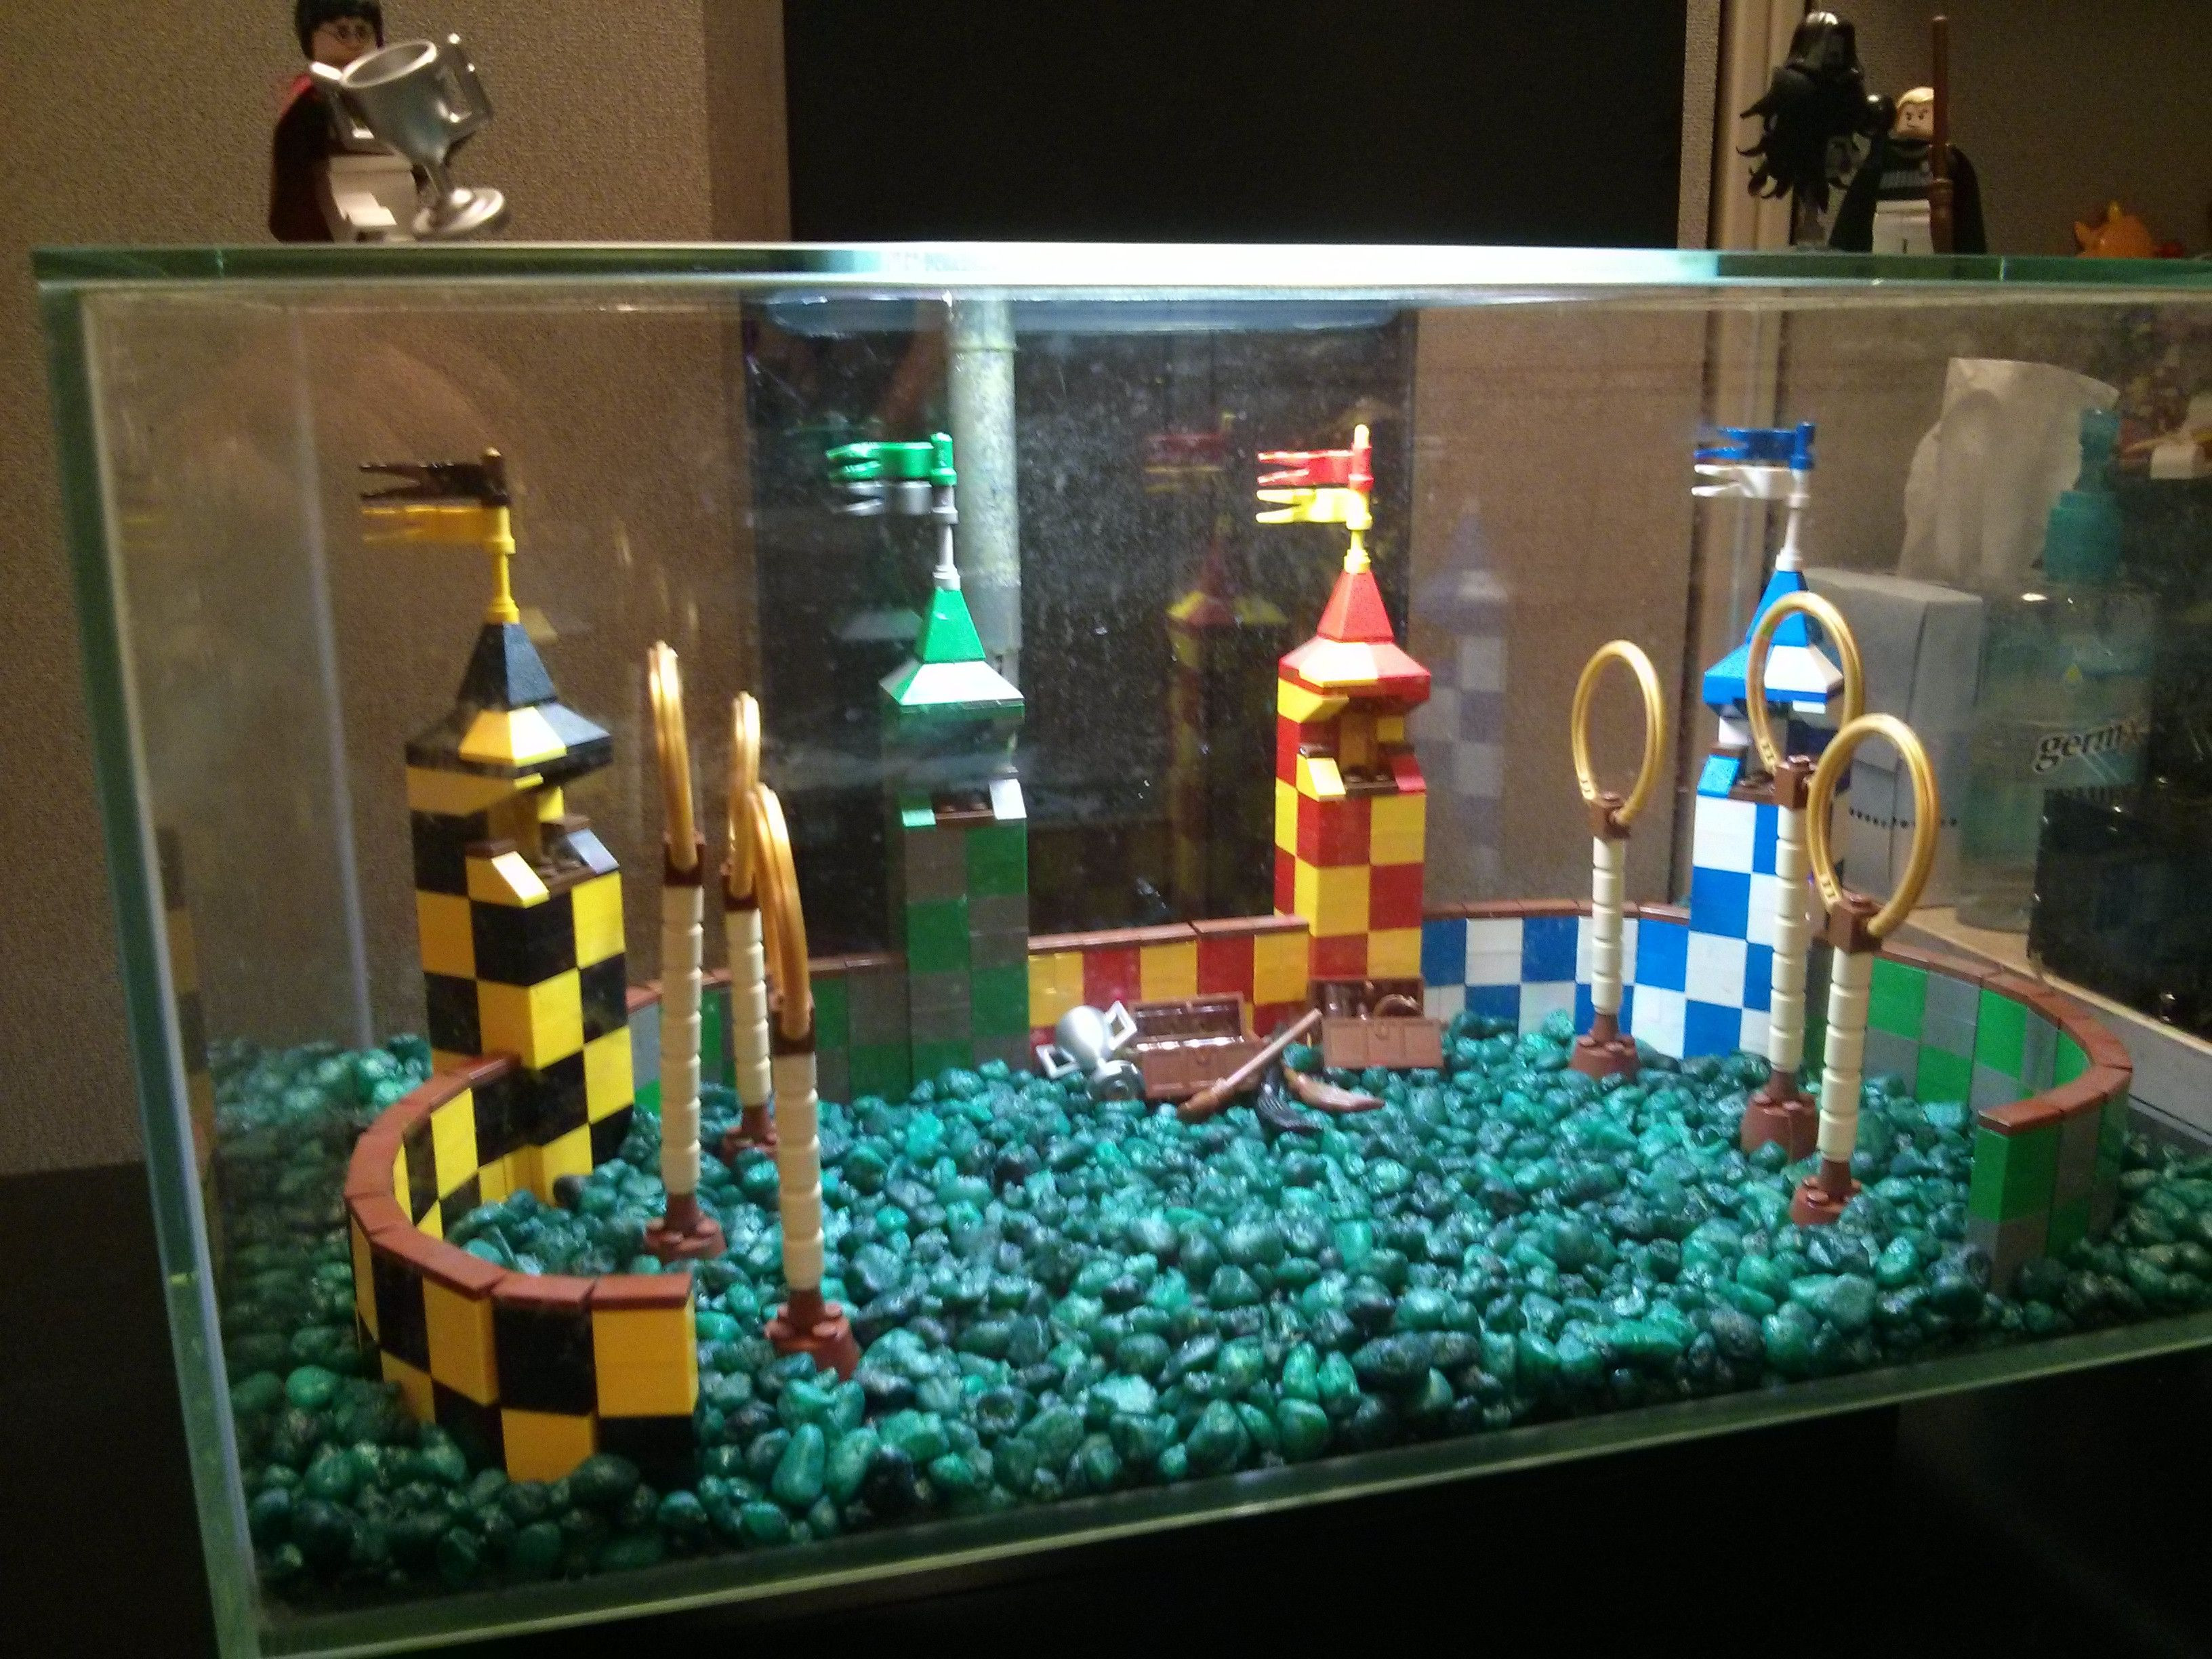 Best ideas about DIY Aquarium Decoration
. Save or Pin Quidditch Aquarium Decoration Build Now.